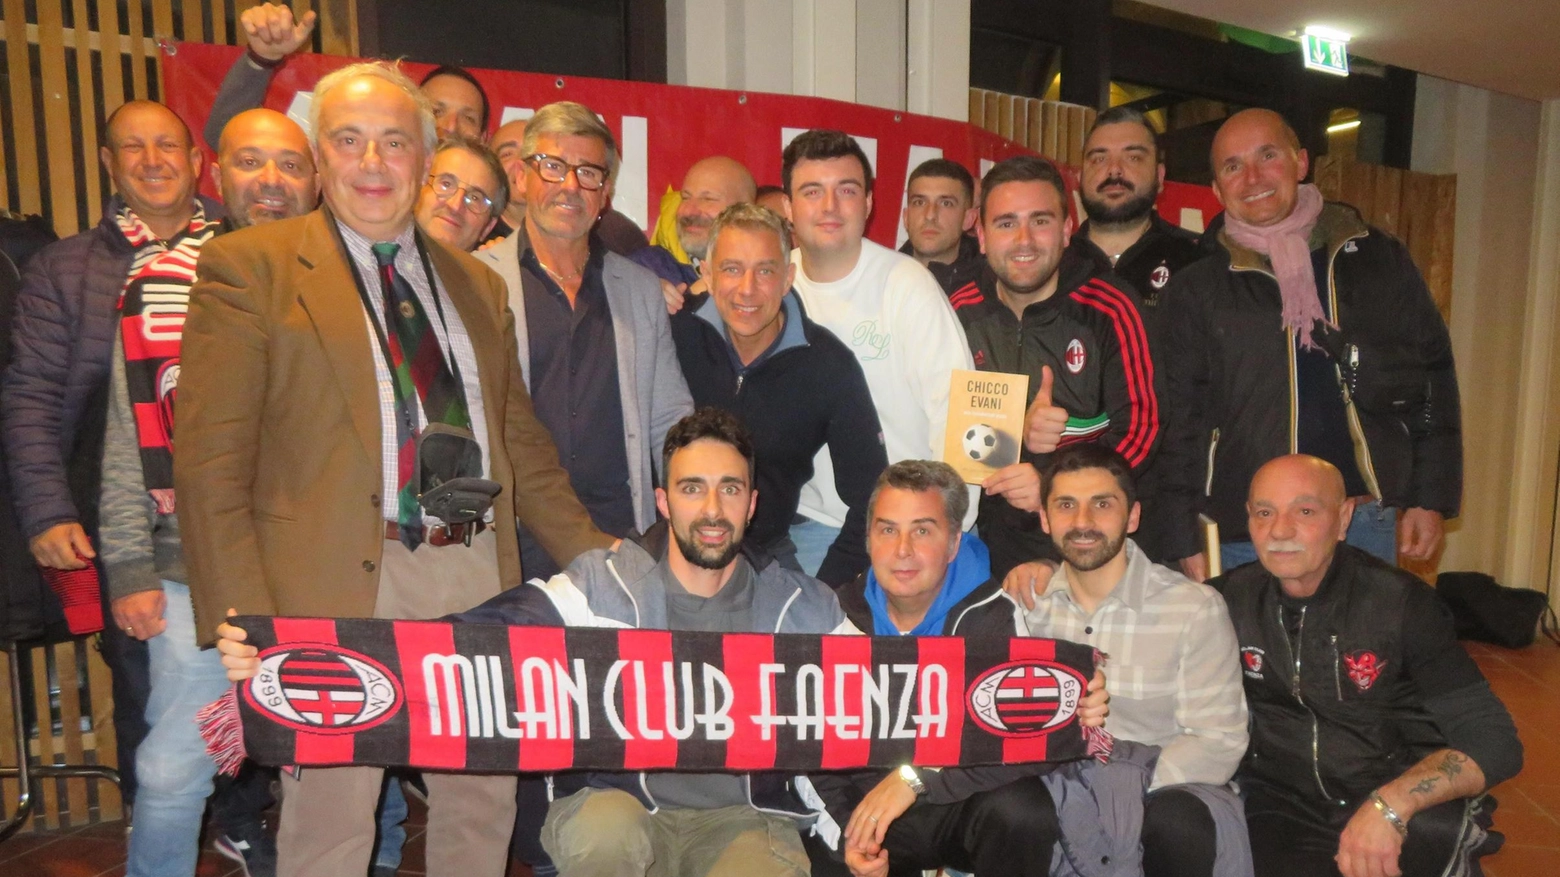 Alberico Evani, ex campione del Milan, ricorda la sua carriera e il gol decisivo nella coppa Intercontinentale a Tokyo. Incontro a Faenza sul ruolo dell'allenatore nel calcio.